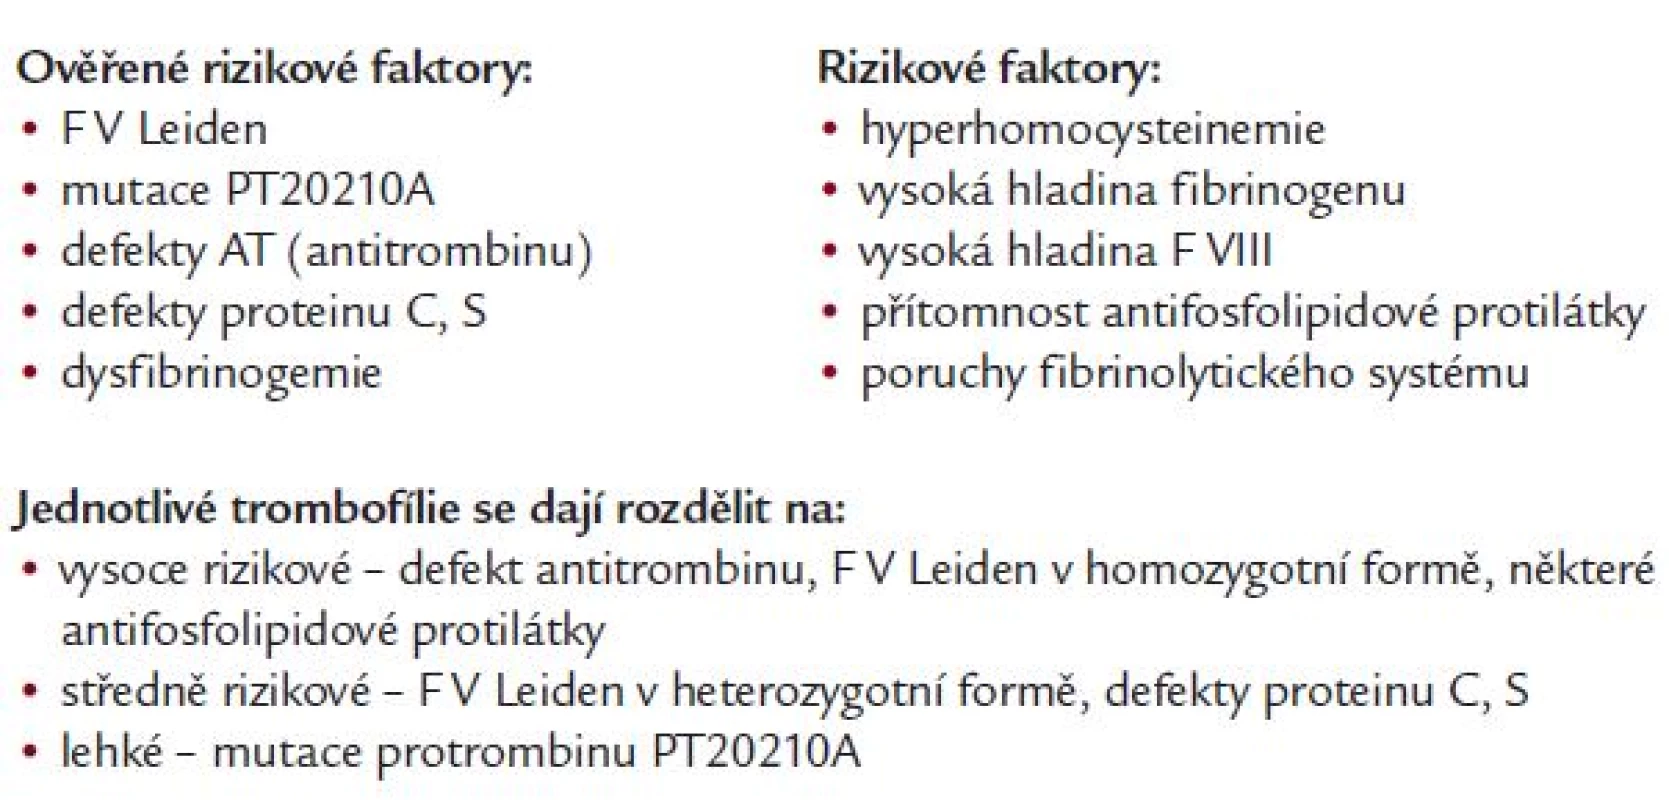 Přehled vrozených a získaných poruch vedoucích k trombotické diatéza mimo nádorové onemocnění (Gerock, 2000, Crowther, 2003).